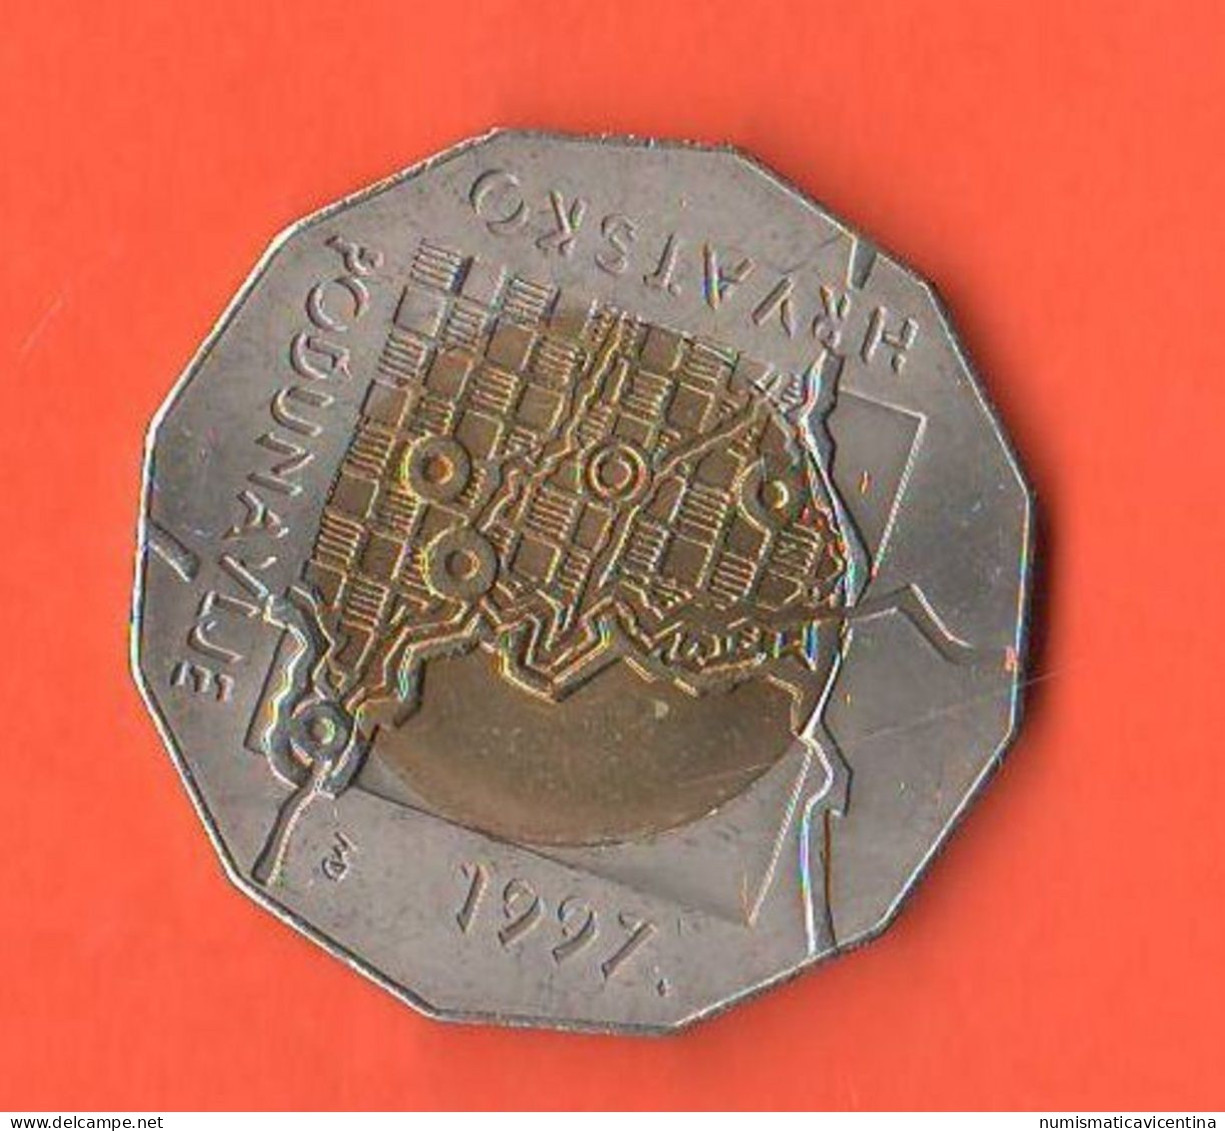 Croazia 25 Kuna 1997 Croatia ONU Republic Hrvatska Croatie Bimetallic Coin - Kroatien